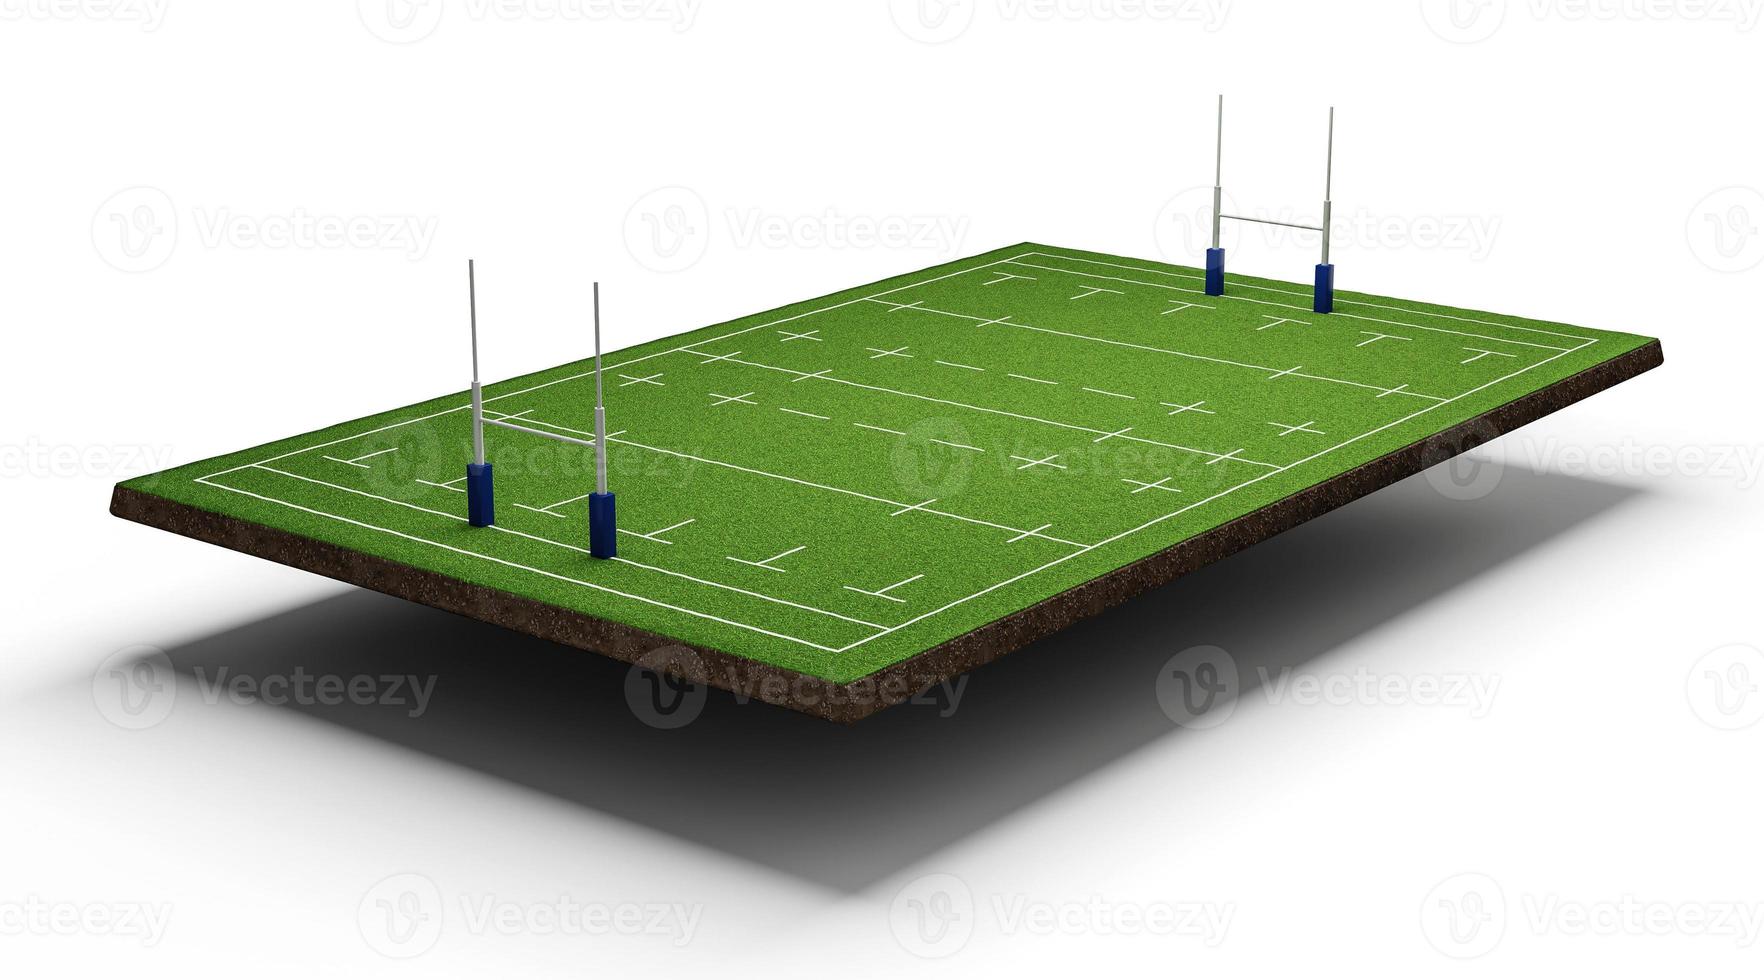 sección transversal del campo de fútbol americano con estadio de rugby verde campo de hierba ilustración 3d foto